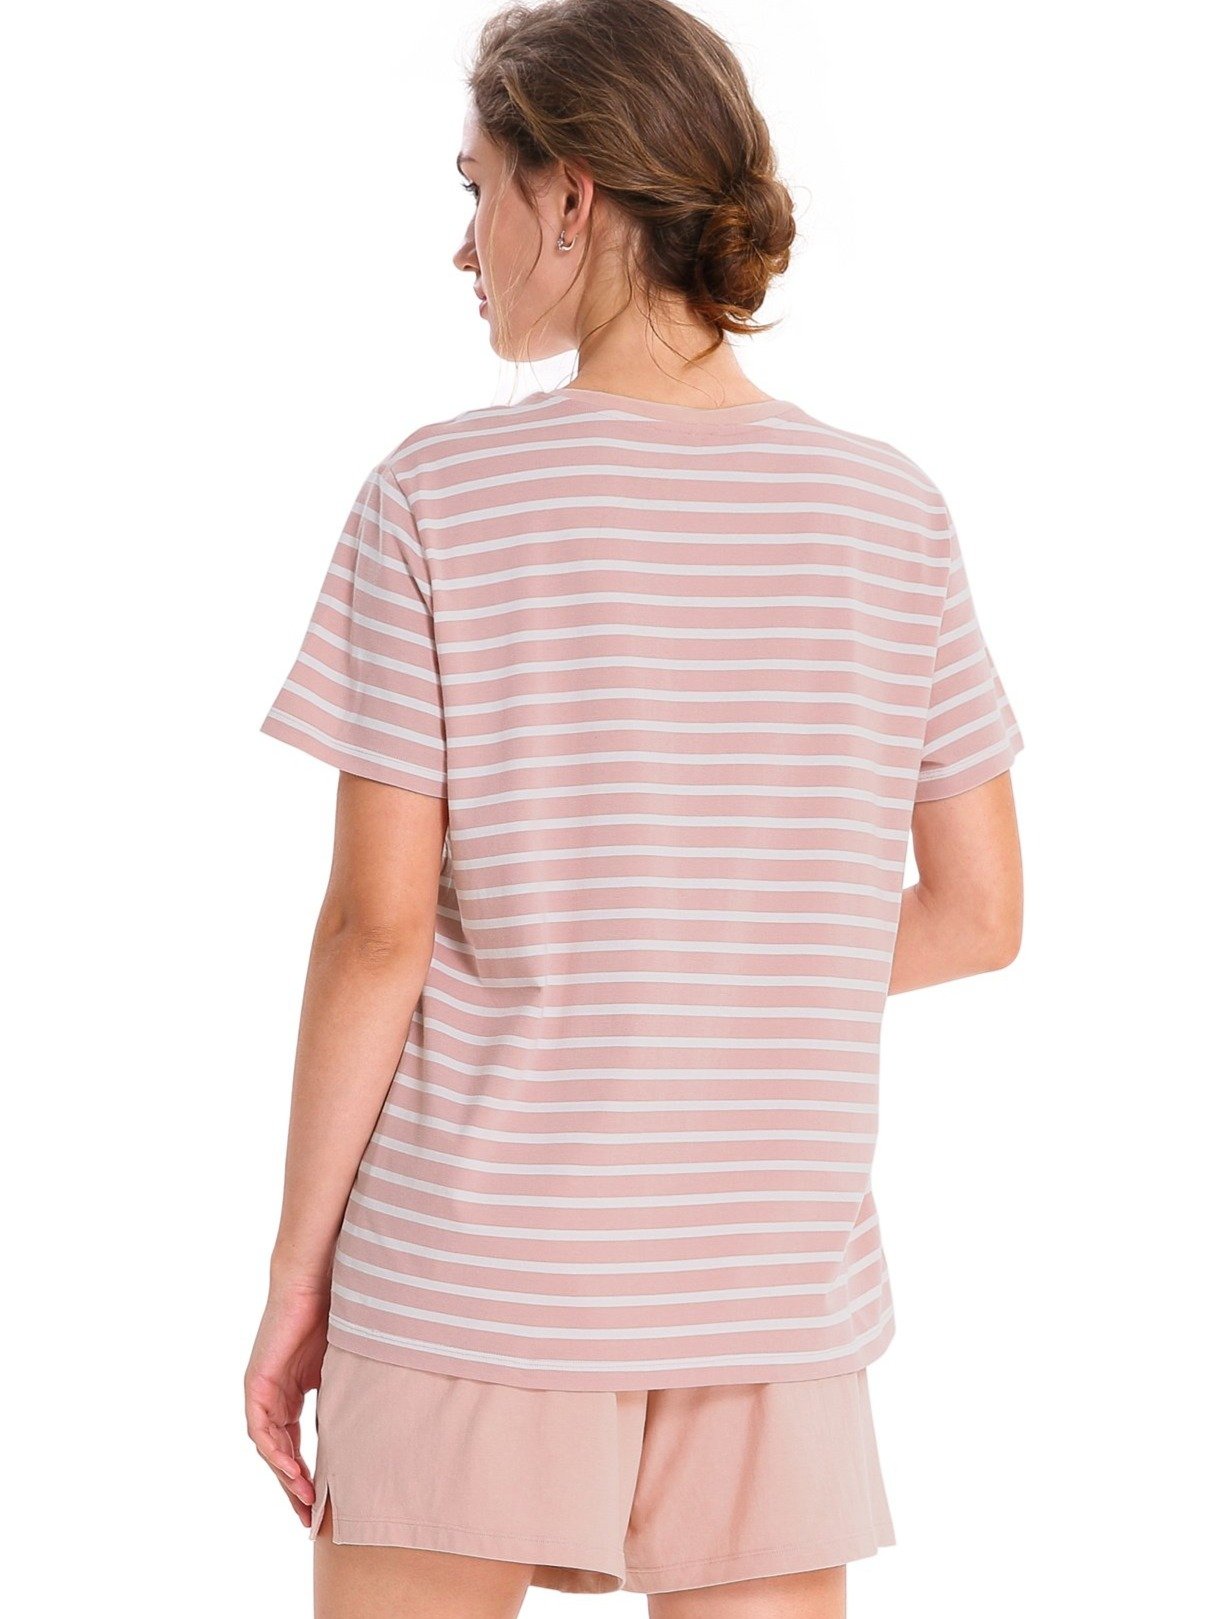 Pajamas for Women Cotton Short Sleepwear Set